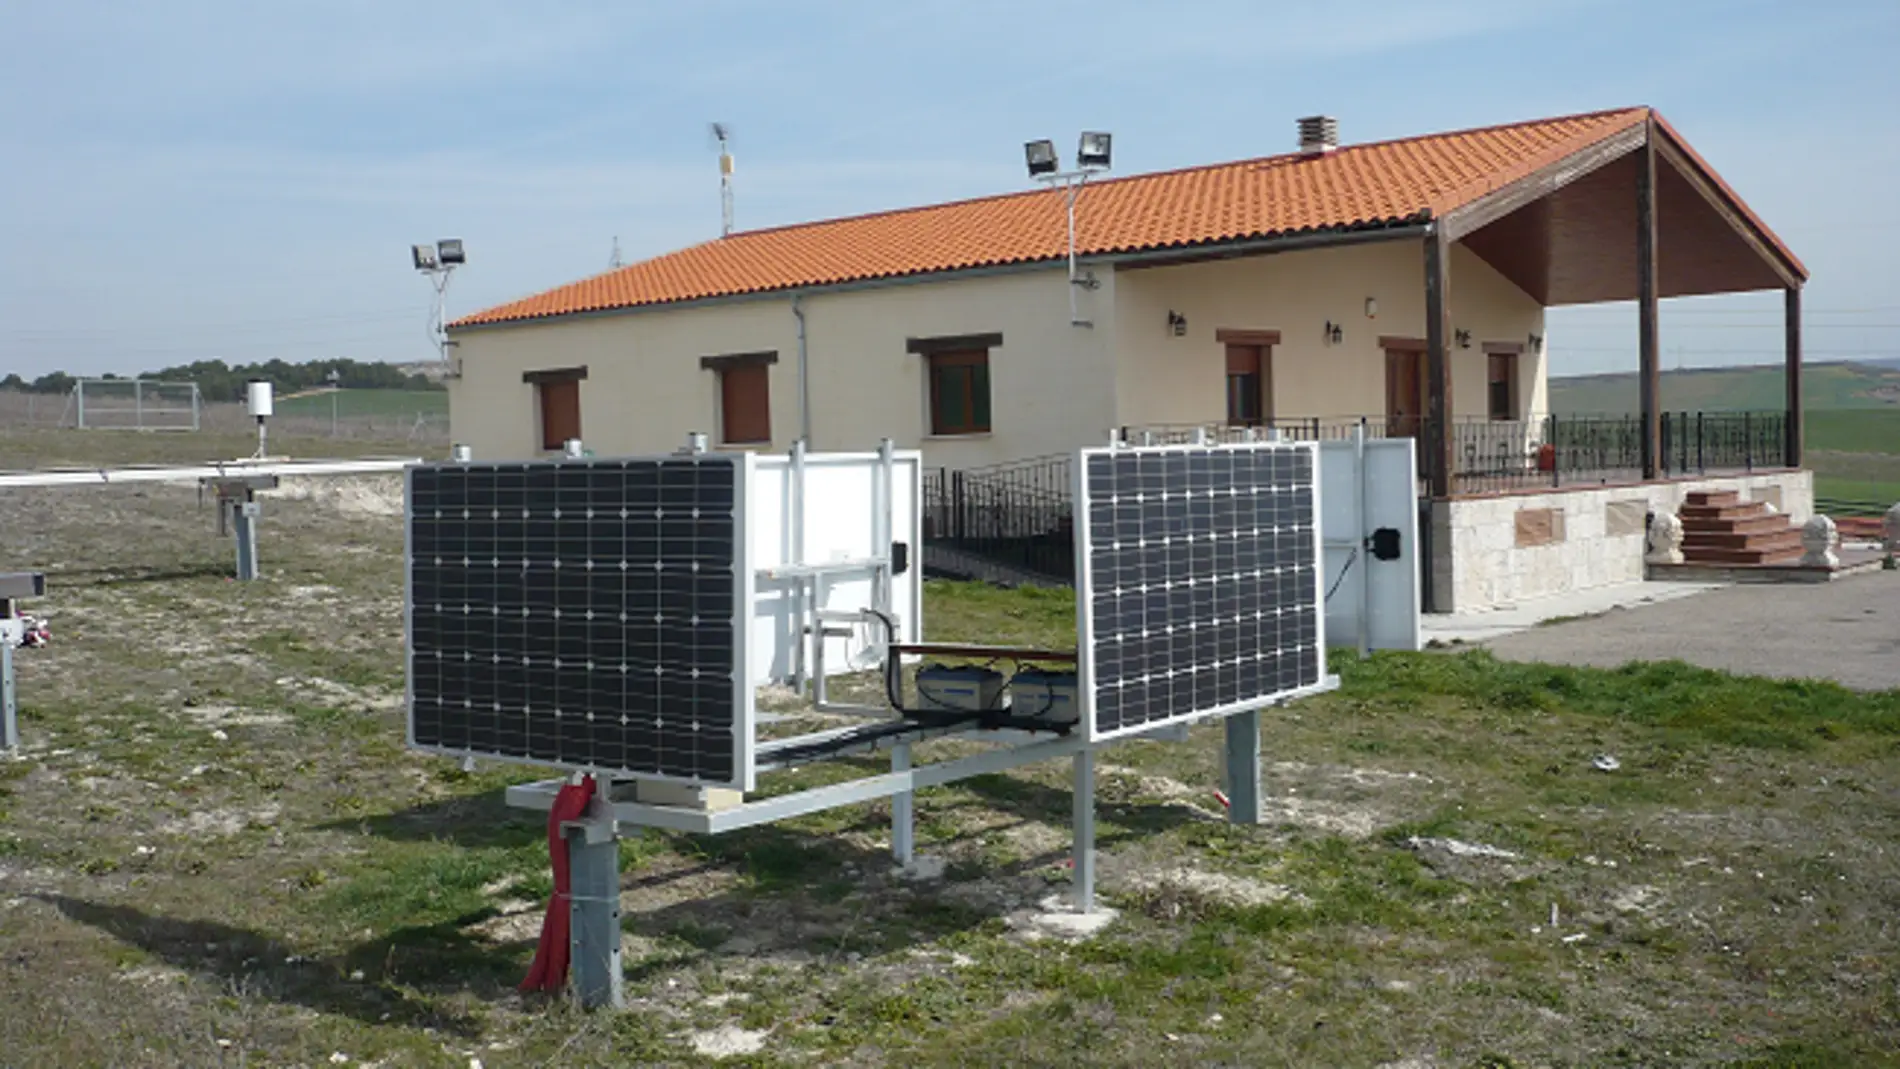 Los paneles fotovoltaicos tambien son eficaces en las fachadas